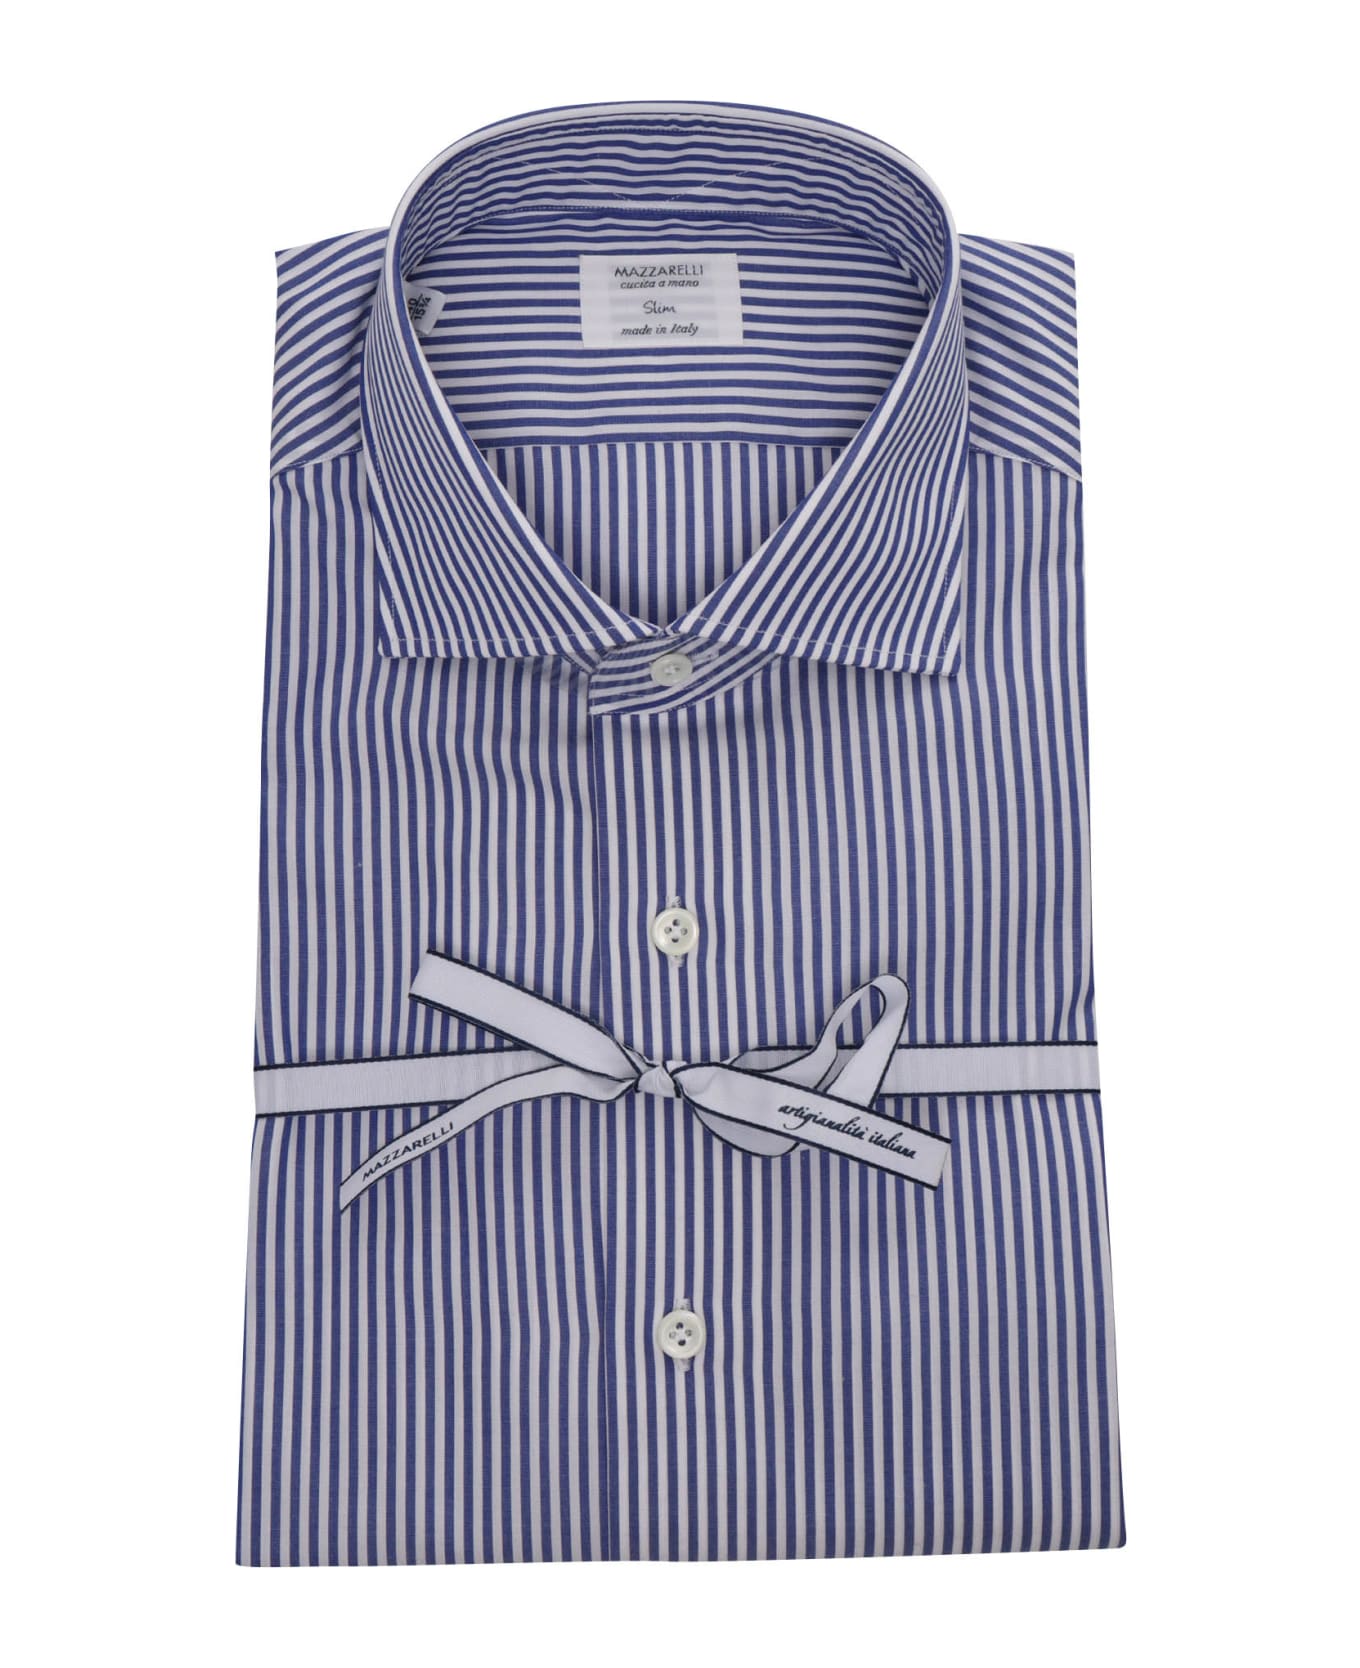 Mazzarelli Blue Striped Shirt - WHITE